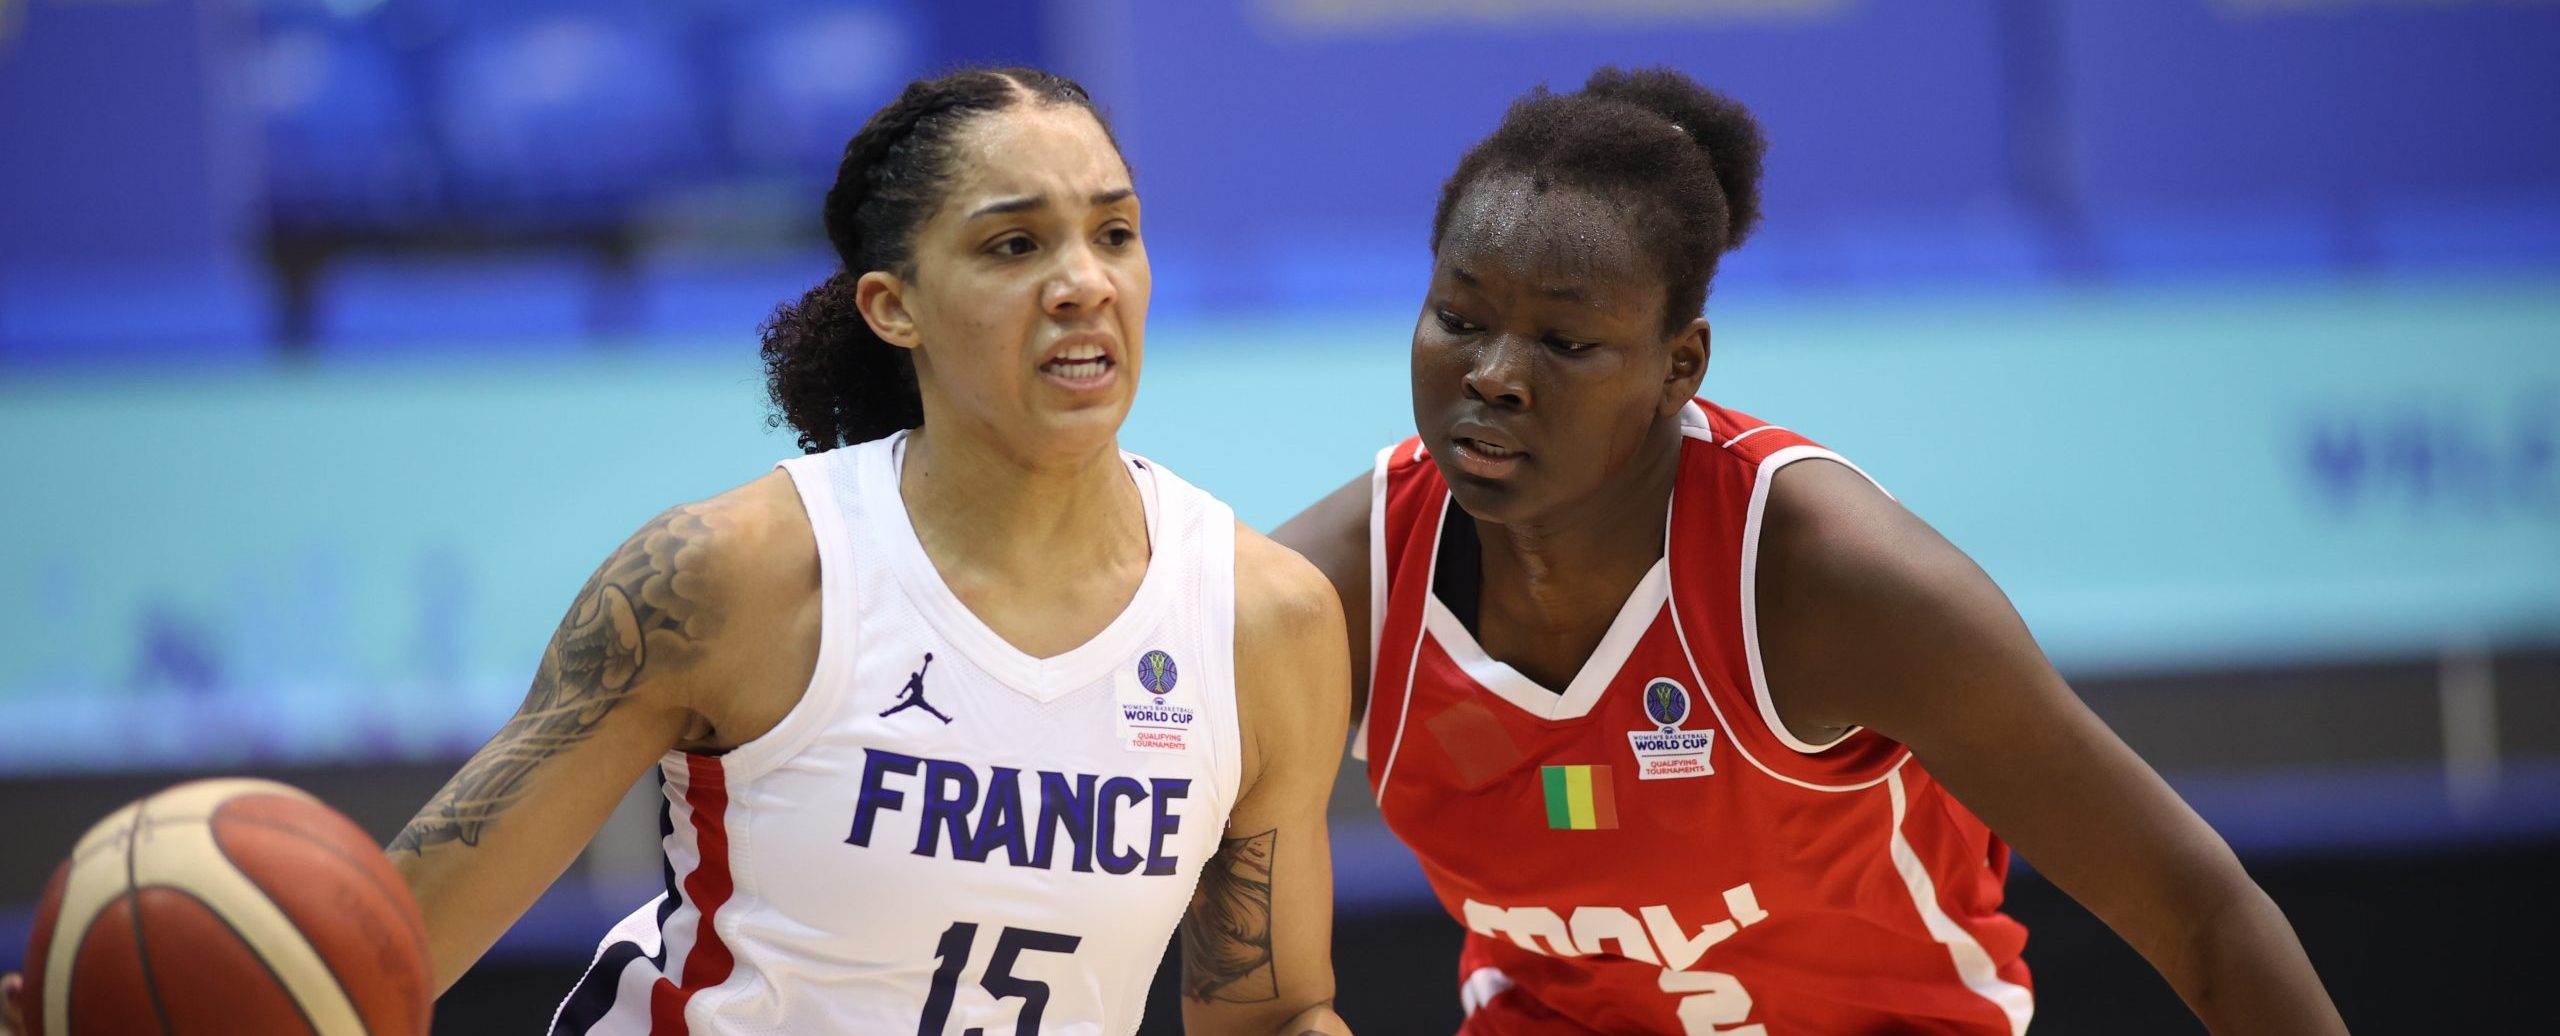 L'équipe de France de basket-ball s'est imposée face au Mali lors du match de qualification au mondial 2022